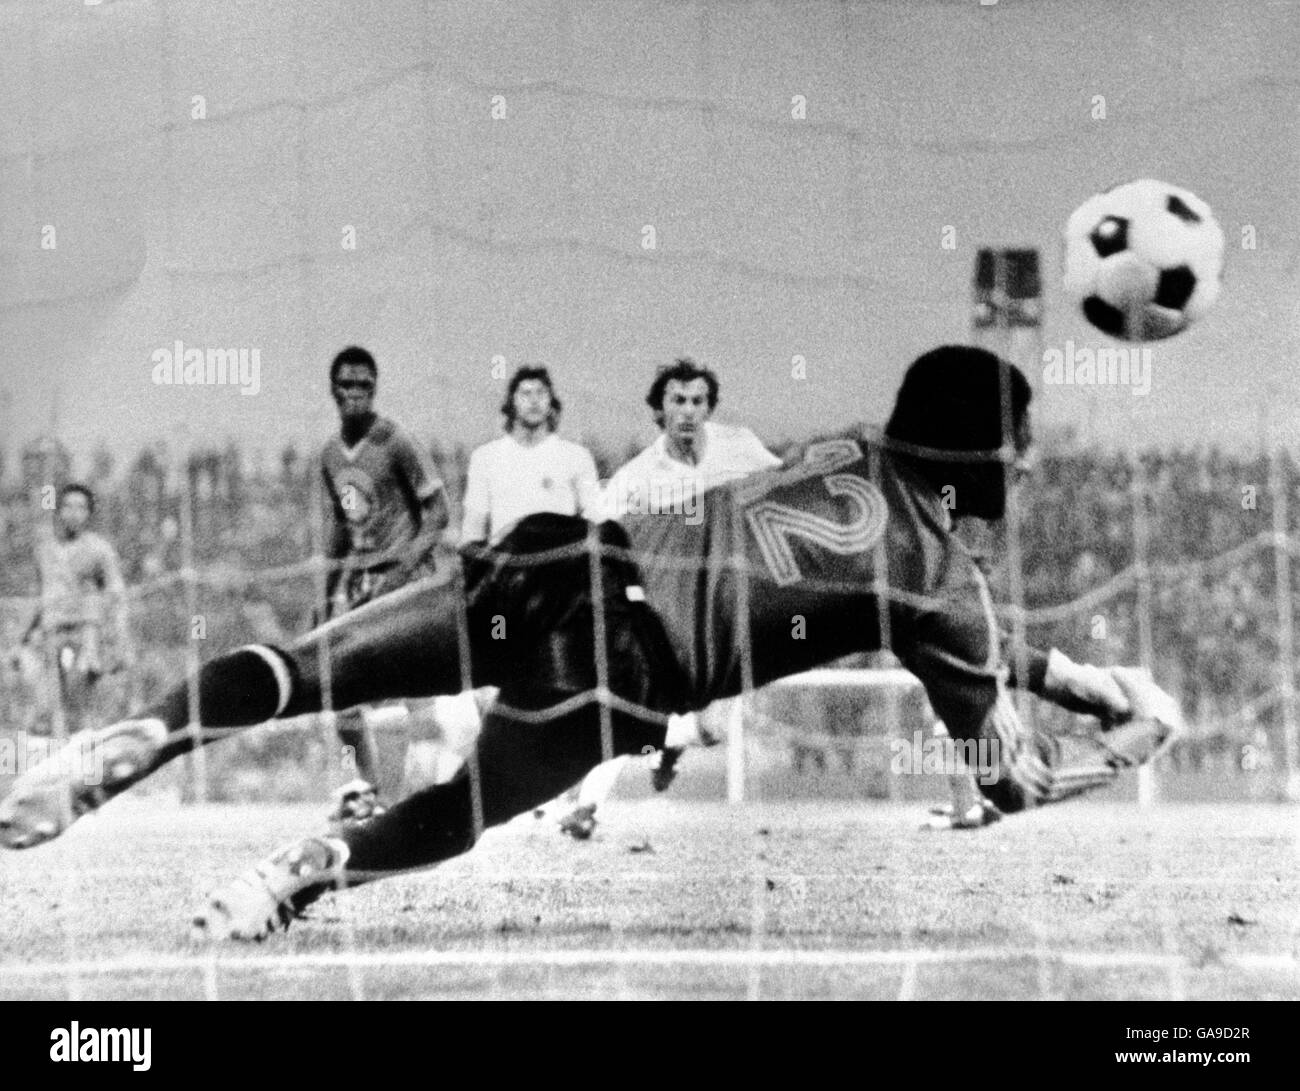 Fußball - Weltmeisterschaft Westdeutschland 74 - Gruppe zwei - Jugoslawien / Zaire. Zaire-Ersatztorwart Dimbi Tubilandu wird für eines der neun Tore Jugoslawiens geschlagen Stockfoto